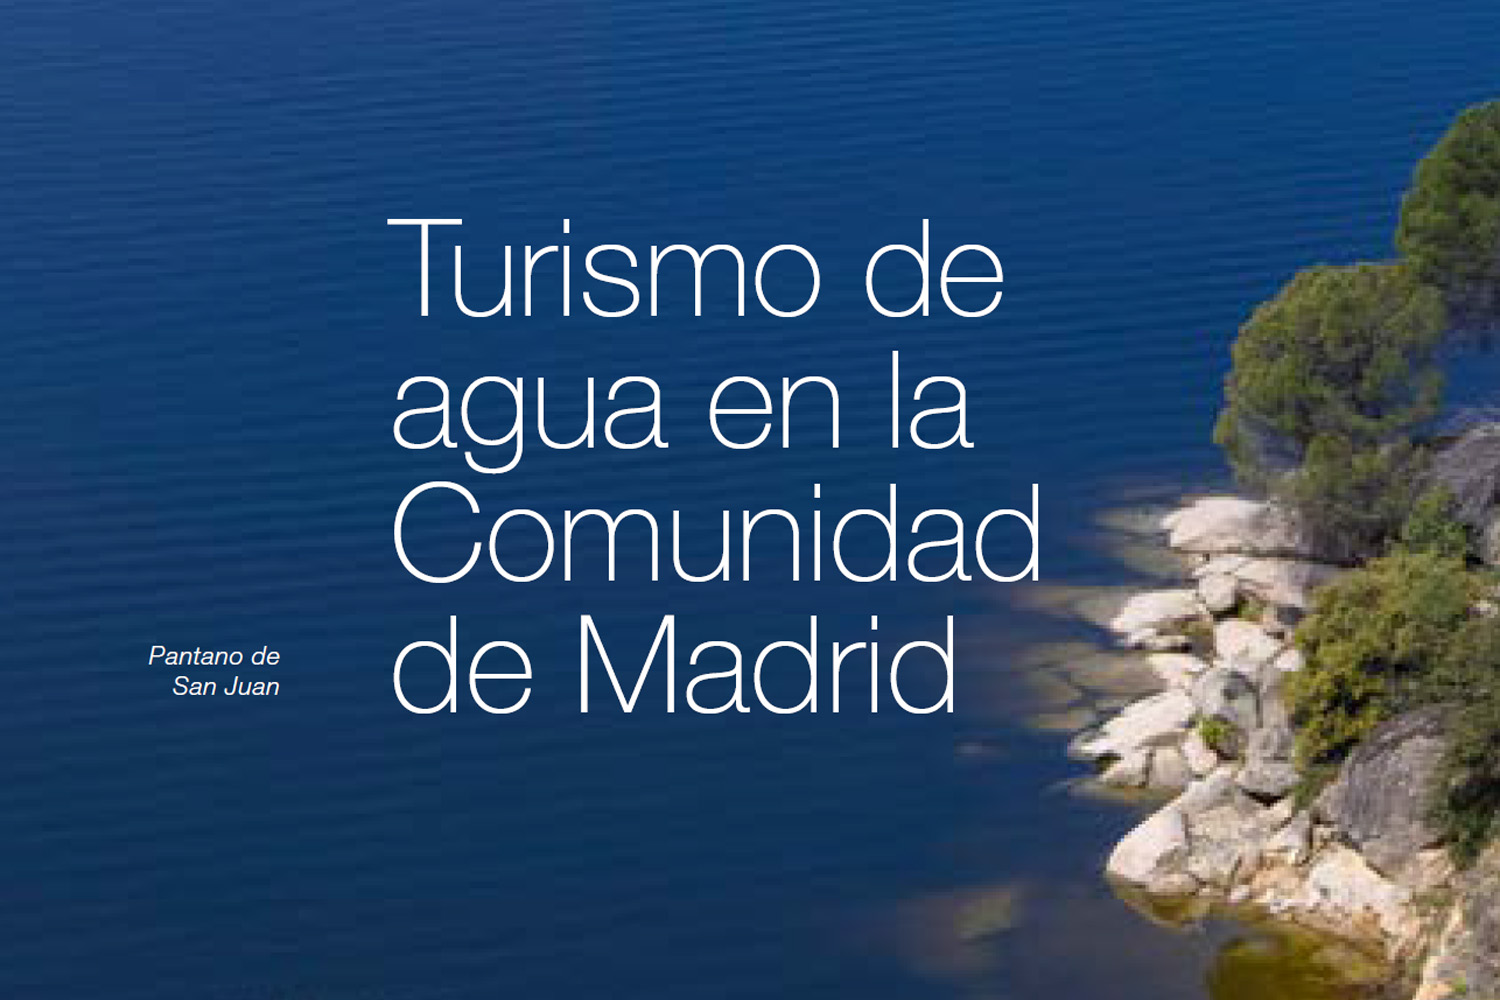 Turismo de agua en la Comunidad de Madrid